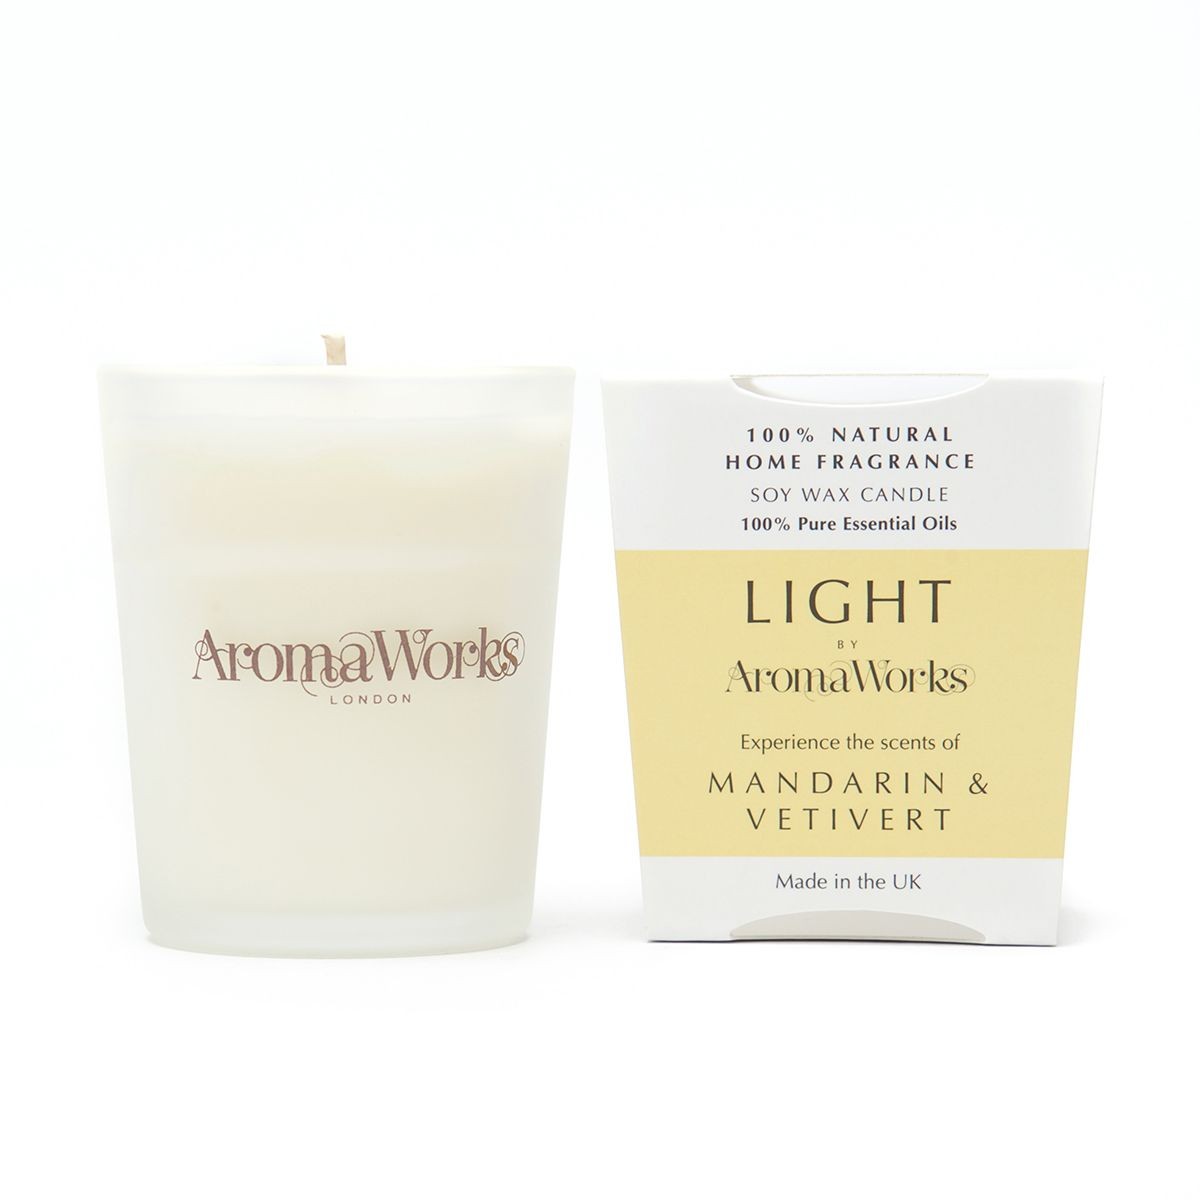 Aromaworks Light Range Mandarin & Vetivert Candle 10cl